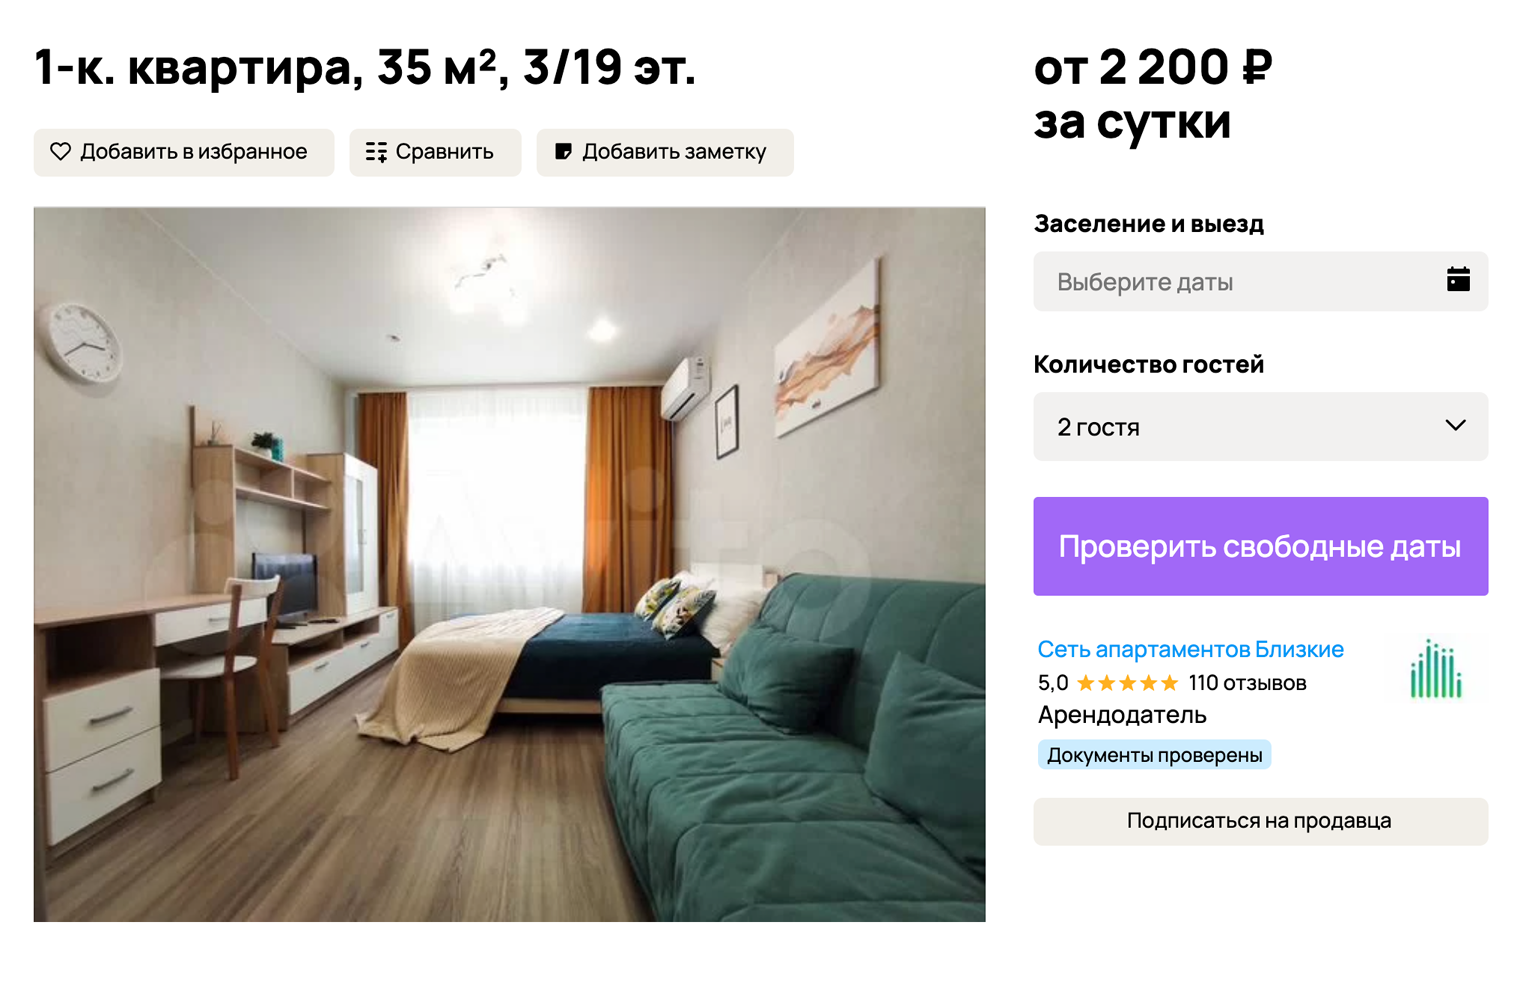 Квартиру в 2 километрах от парка «Краснодар» можно снять за 2200 ₽. Источник: avito.ru